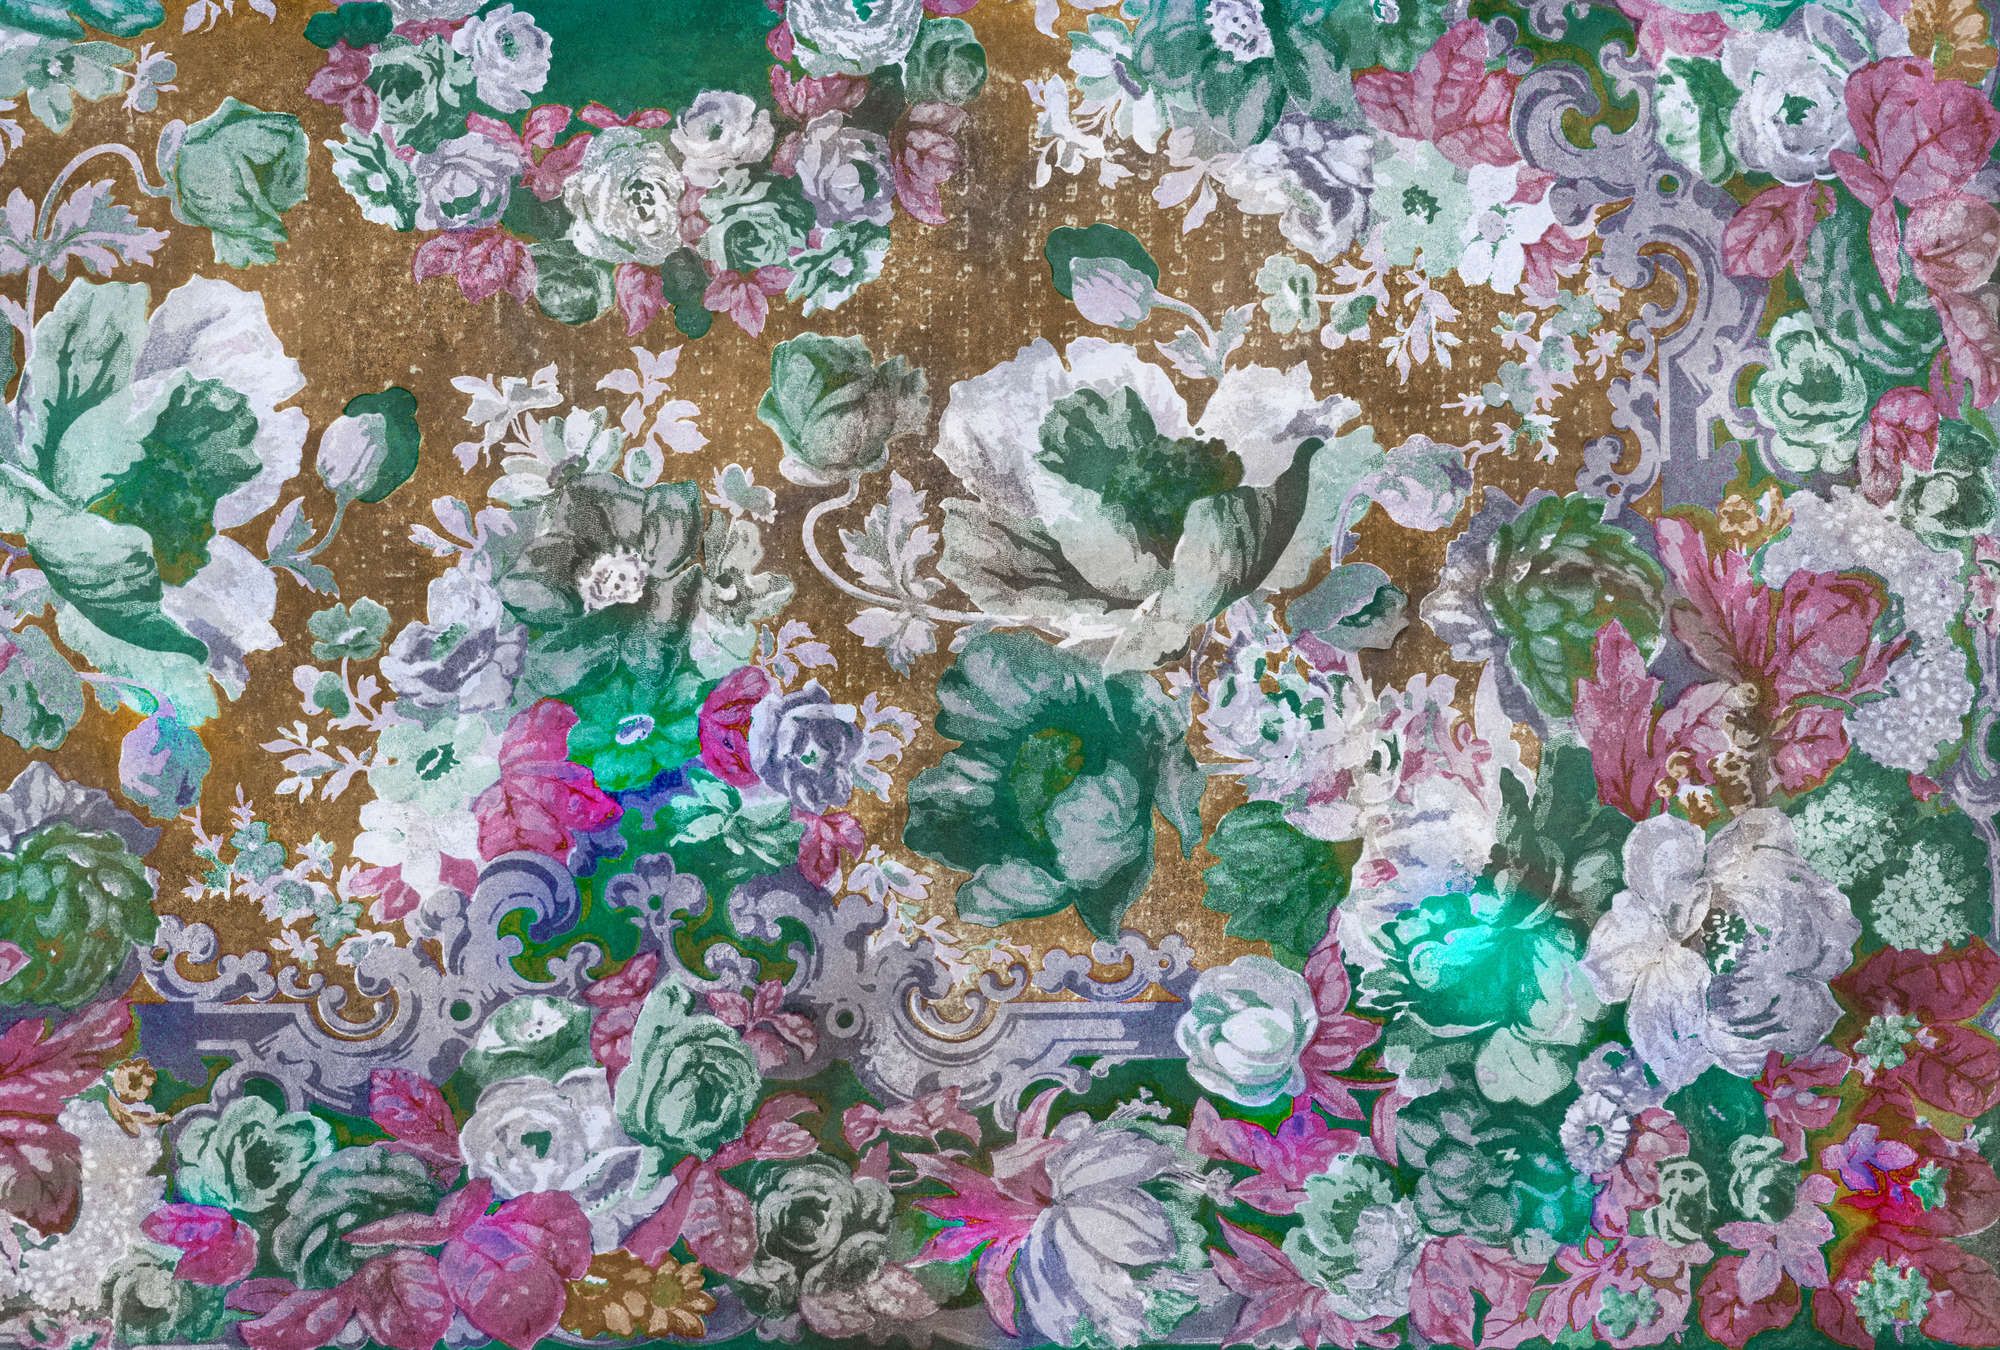             Fotomural »carmente 1« - Motivo floral de estilo clásico delante de textura de yeso vintage - Coloreado | Material no tejido de textura ligera
        